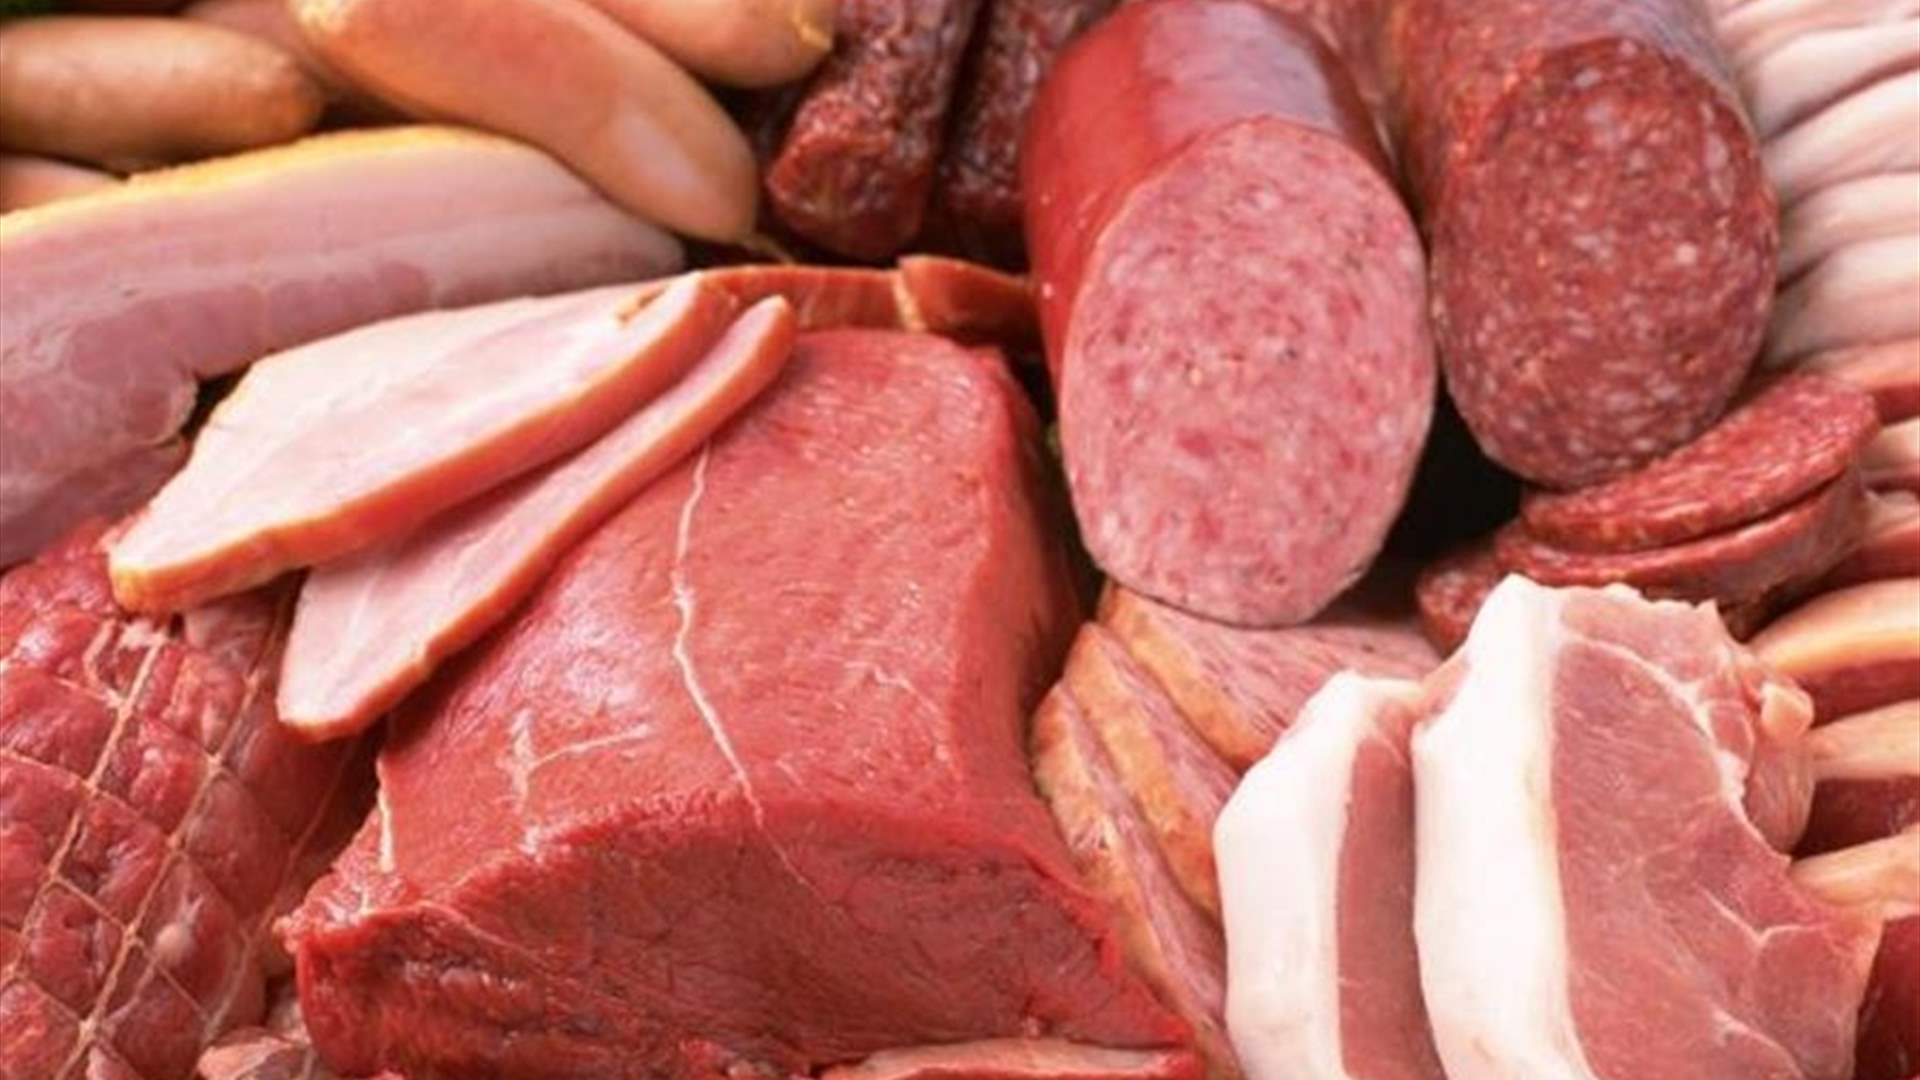 عيد يحذر من عمليات غش كبيرة تحصل ببيع المواطنين اللحم الهندي من دون معرفتهم